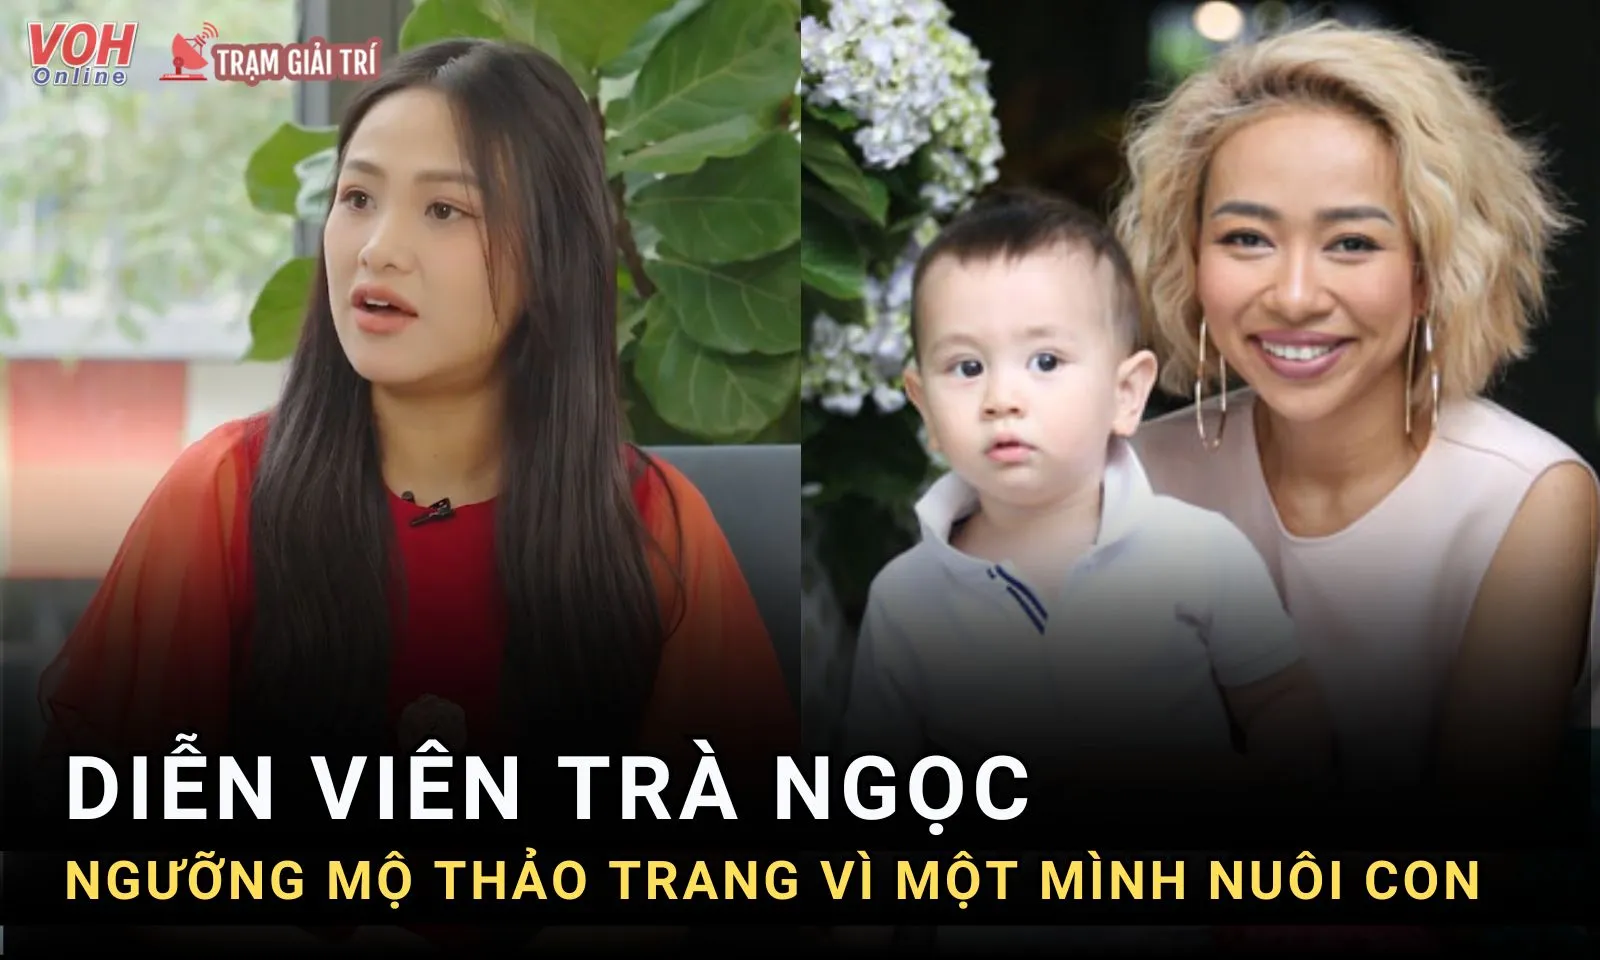 Thảo Trang một mình nuôi con khiến Trà Ngọc ngưỡng mộ